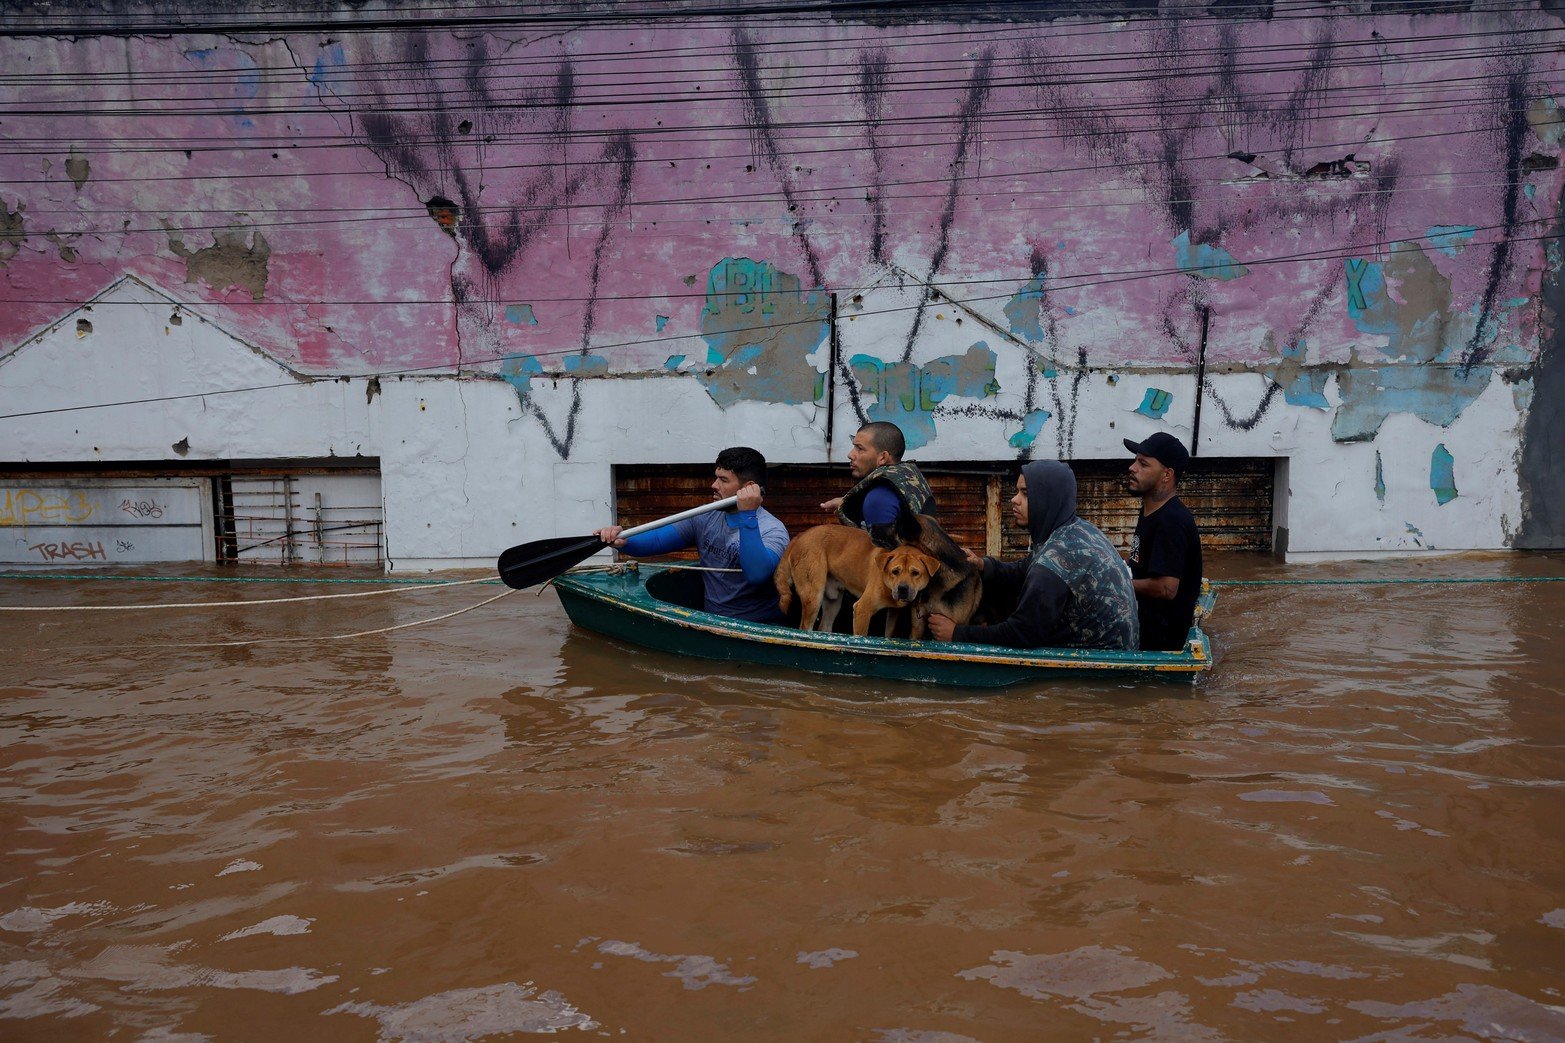 Los residentes rescatan a personas después de las inundaciones en Canoas, en el estado de Rio Grande do Sul, Brasil.